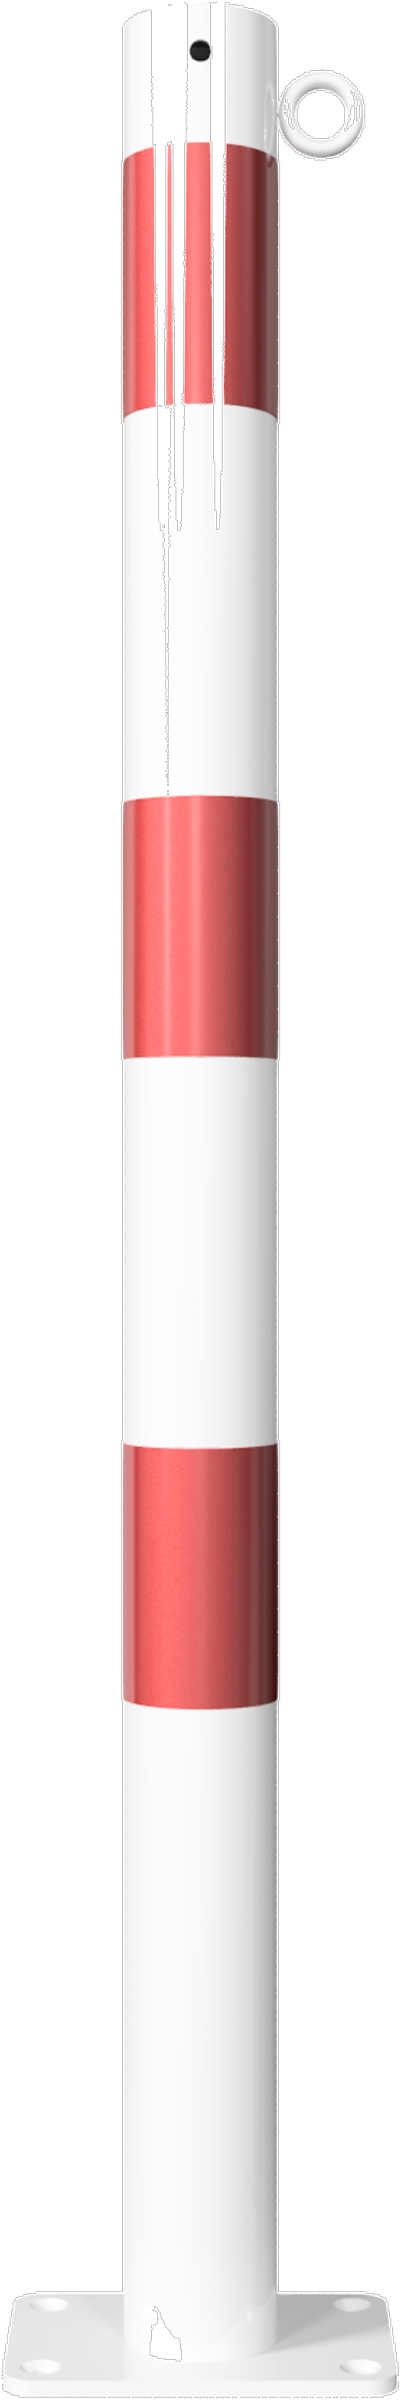 Schake Absperrpfosten OD Ø 60 mm mit 1 Öse weiß | rot